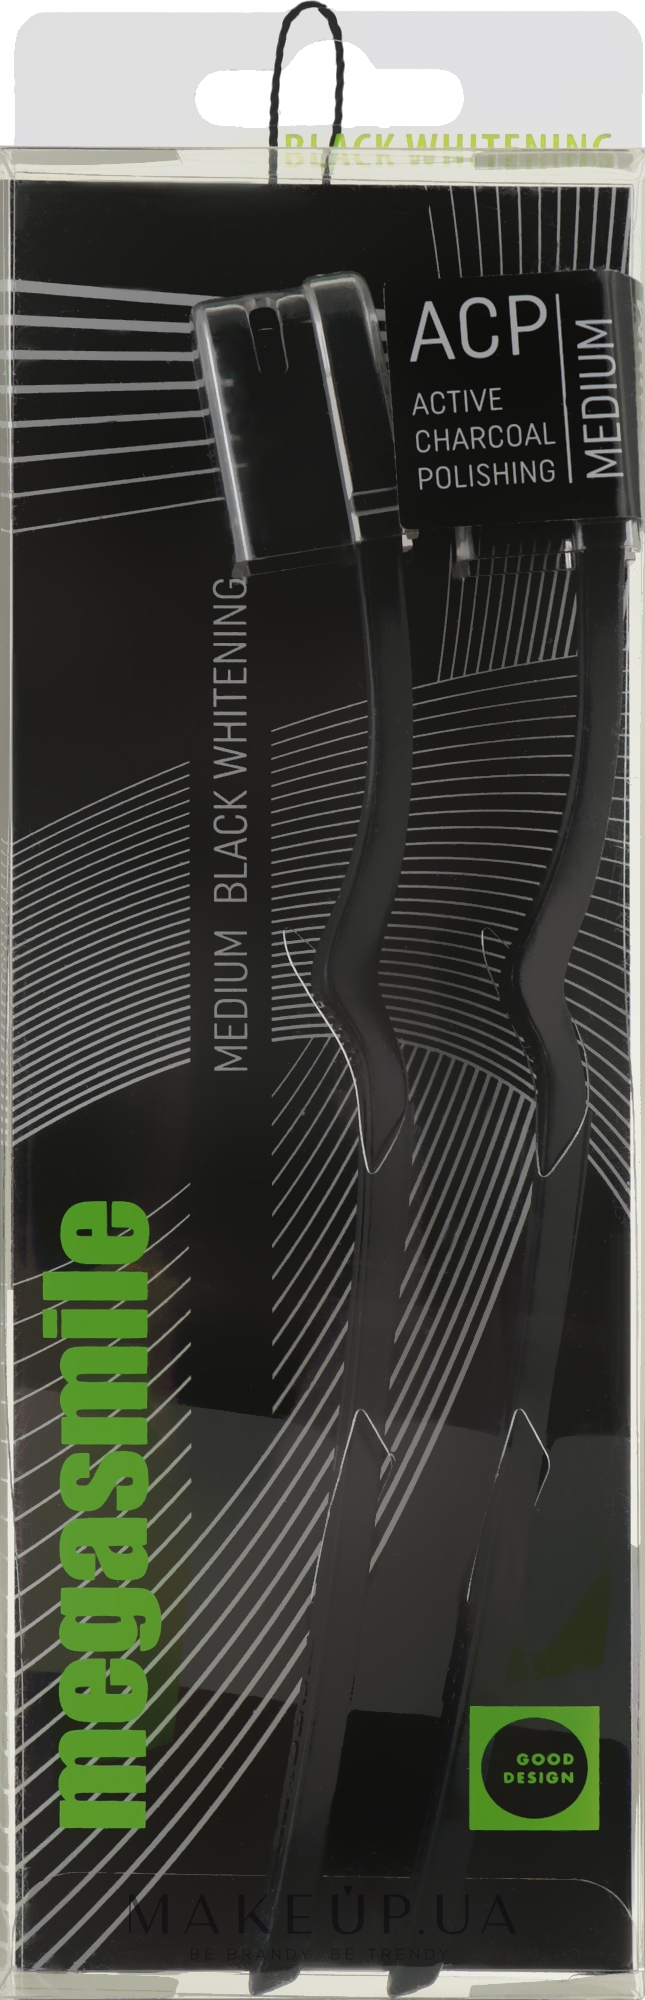 Зубная щётка "Блэк Вайтенинг", черная + черная - Megasmile Medium Whiteninng Toothbrush — фото 2шт